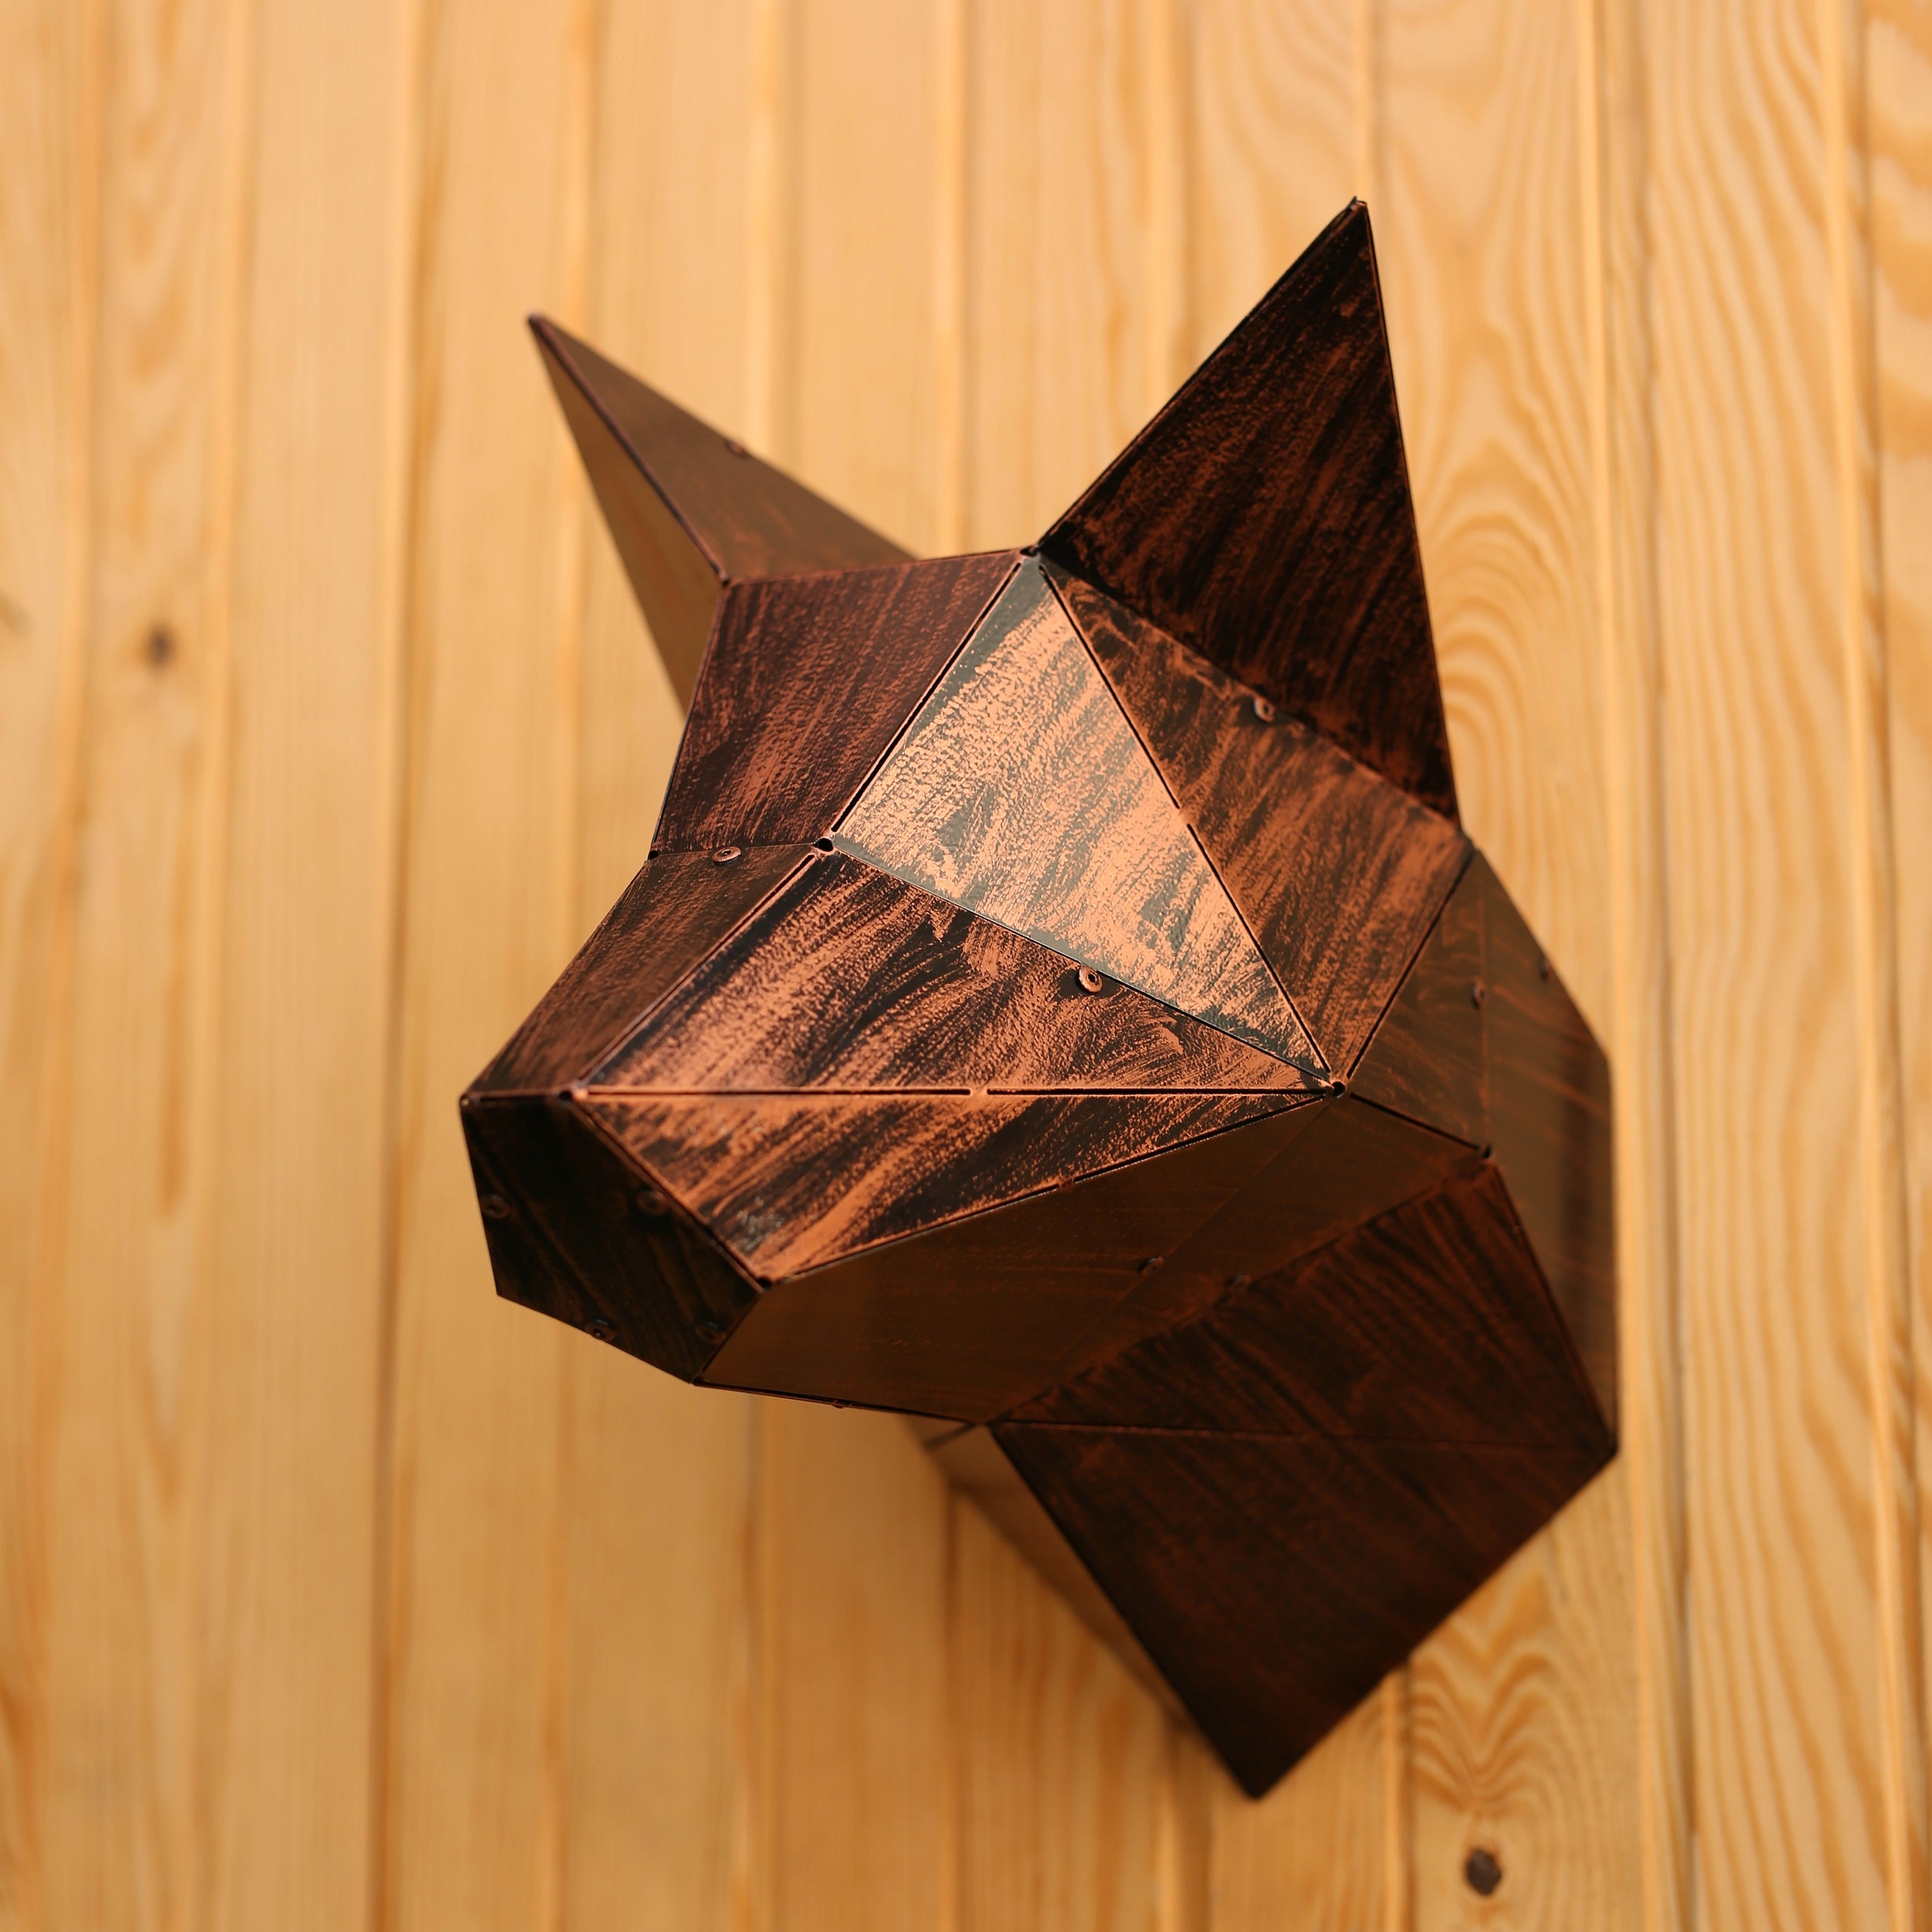 3D Geometric Wall Art of Fox